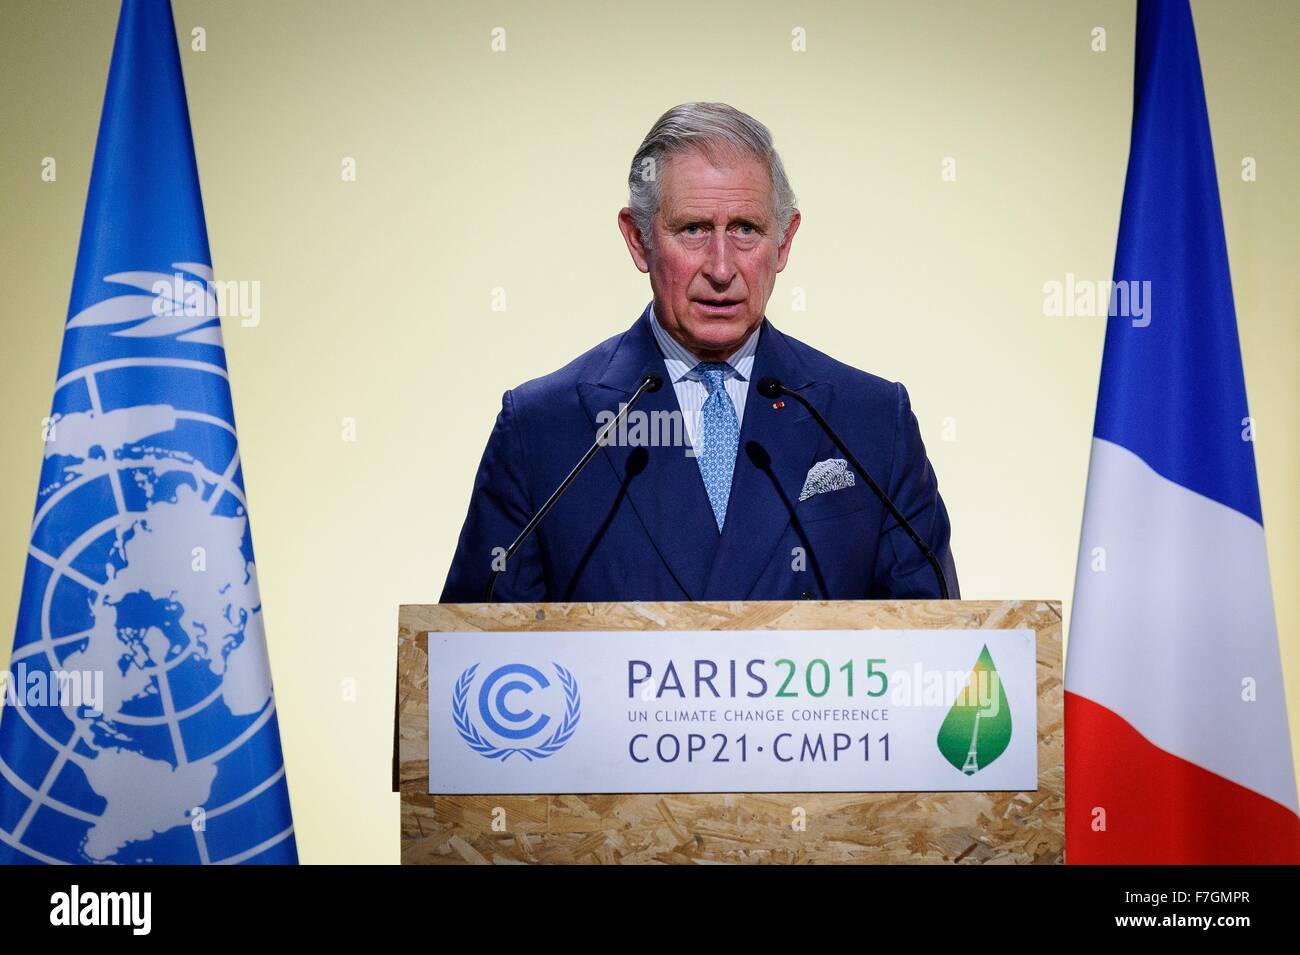 Le Bourget, Francia. 30 Novembre, 2015. Il principe Charles discorso alla sessione plenaria del COP21, la Conferenza delle Nazioni Unite sul Cambiamento Climatico a nome del Regno Unito Novembre 30, 2015 al di fuori di Parigi a Le Bourget, Francia. Foto Stock